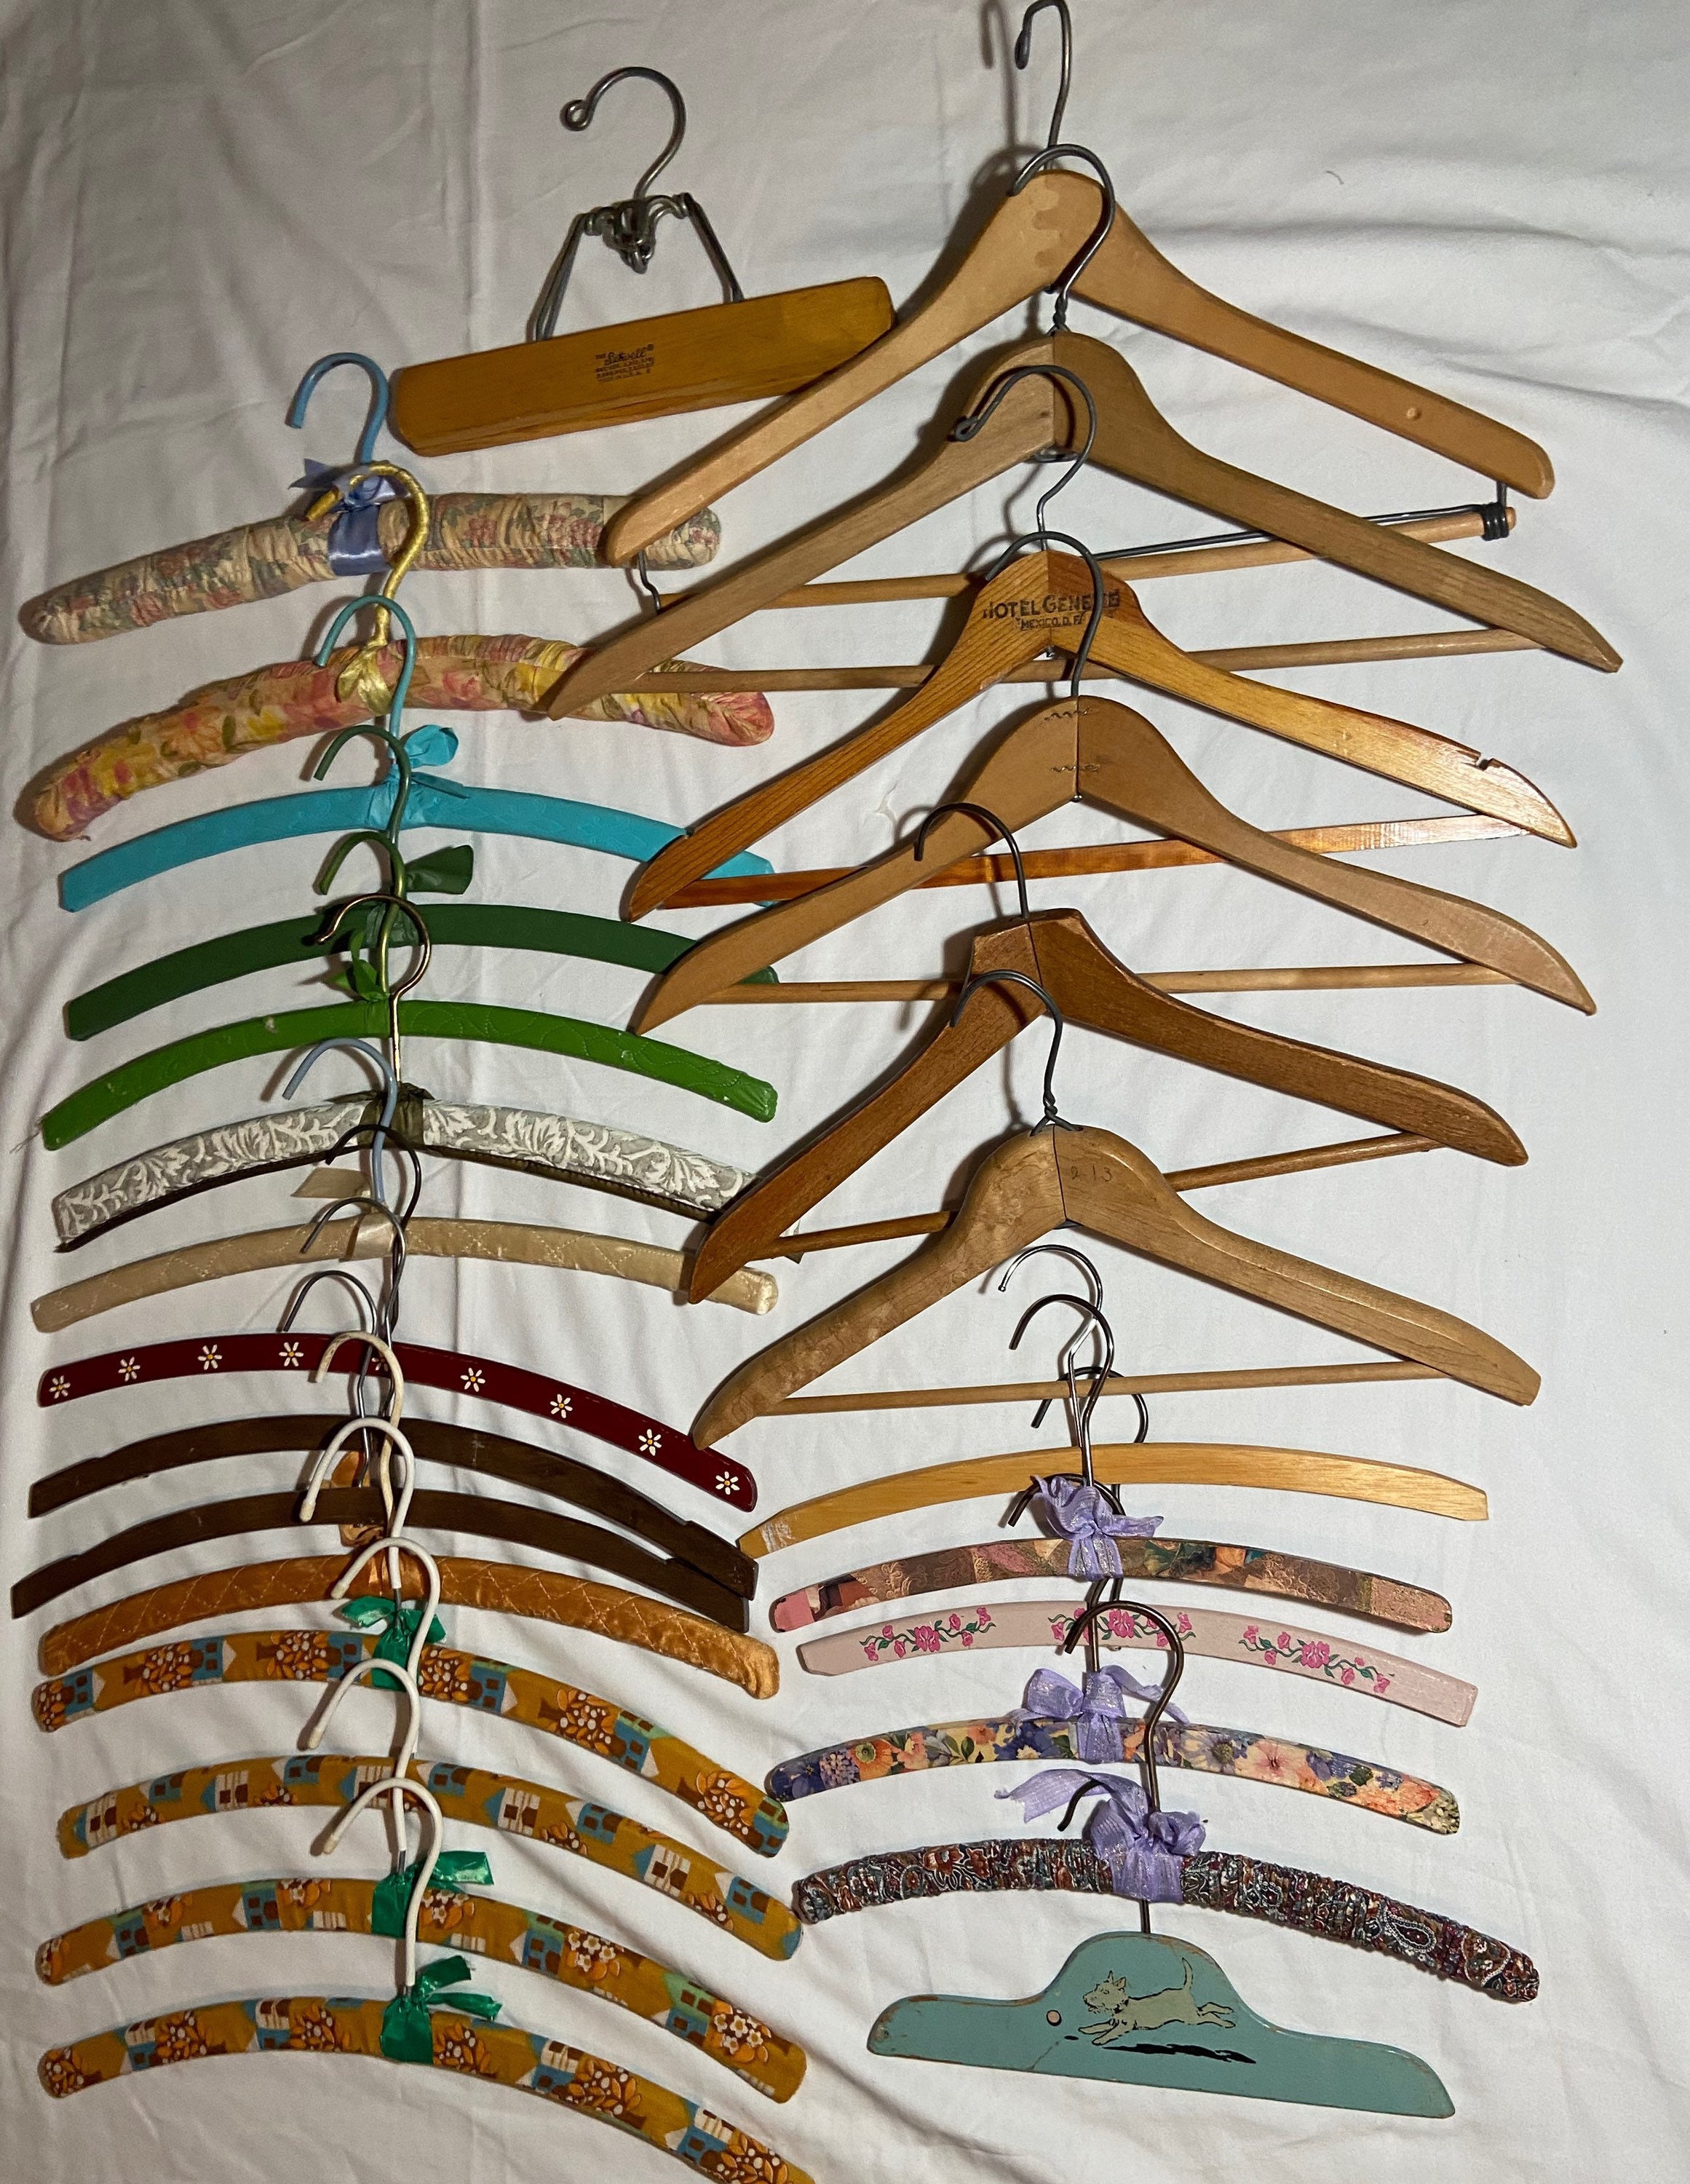 Vintage Children's Clothes Hangers – Duckwells